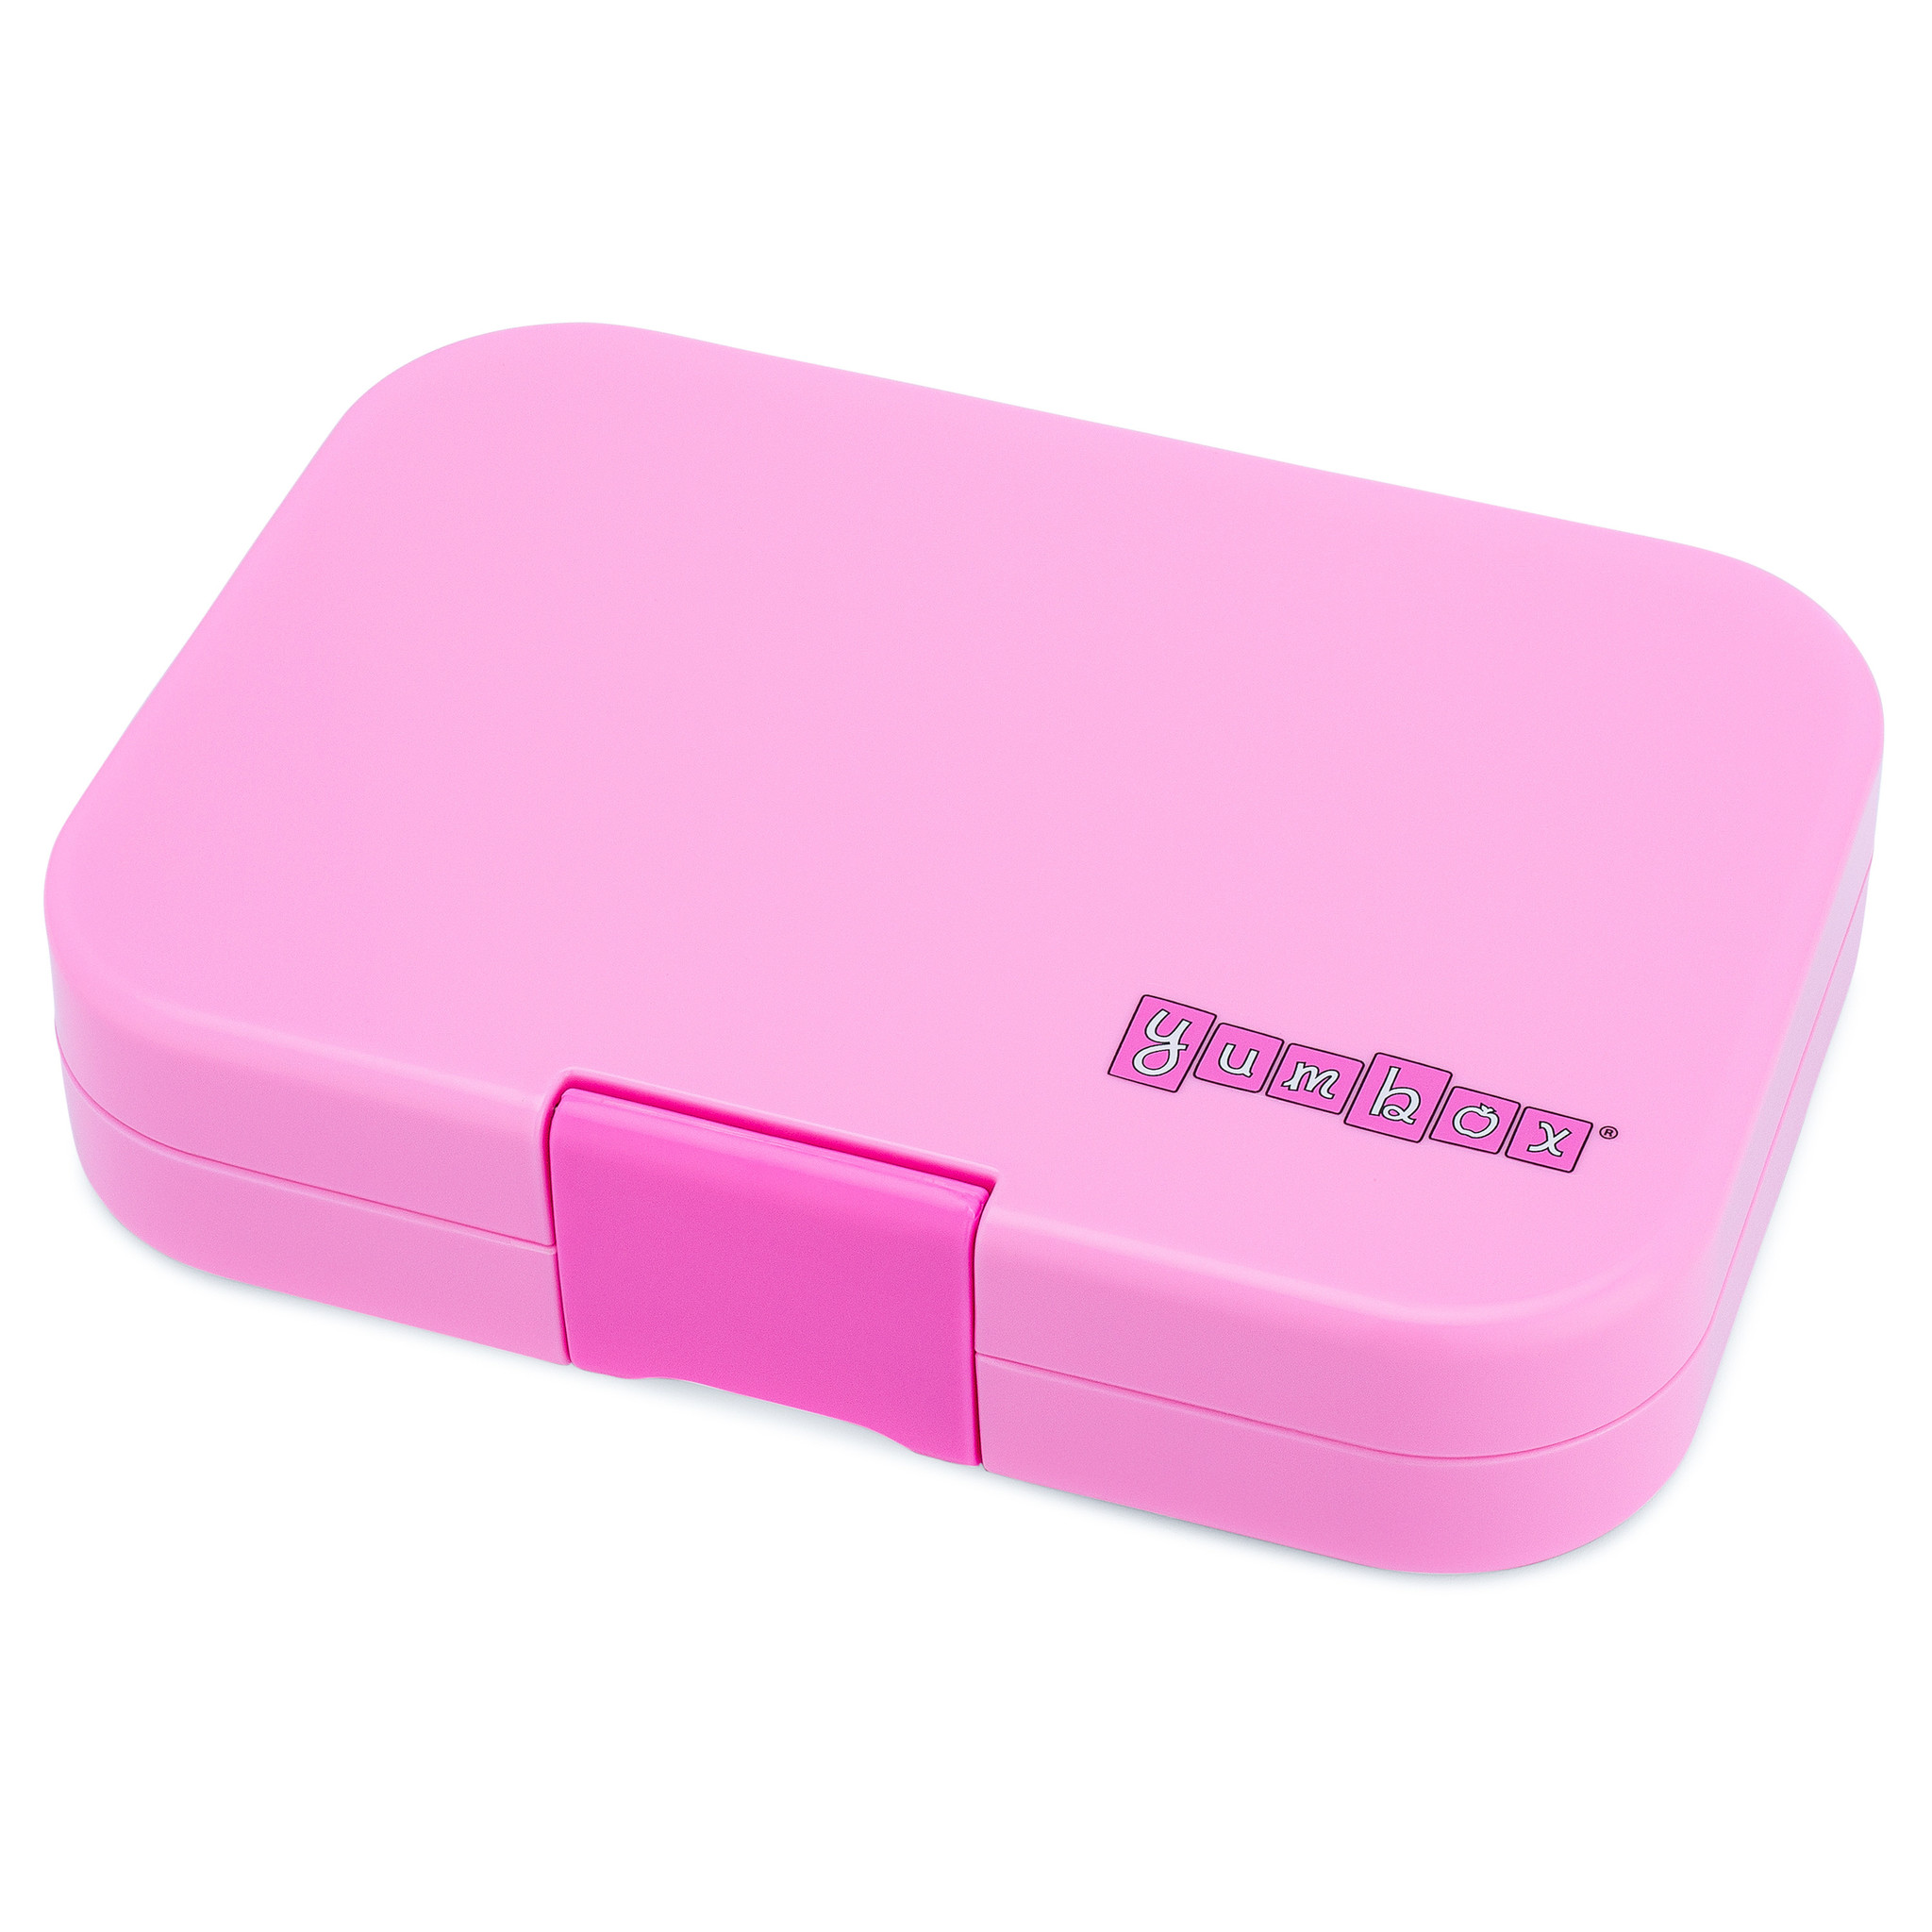 Yumbox Panino exterior box Fifi pink-1